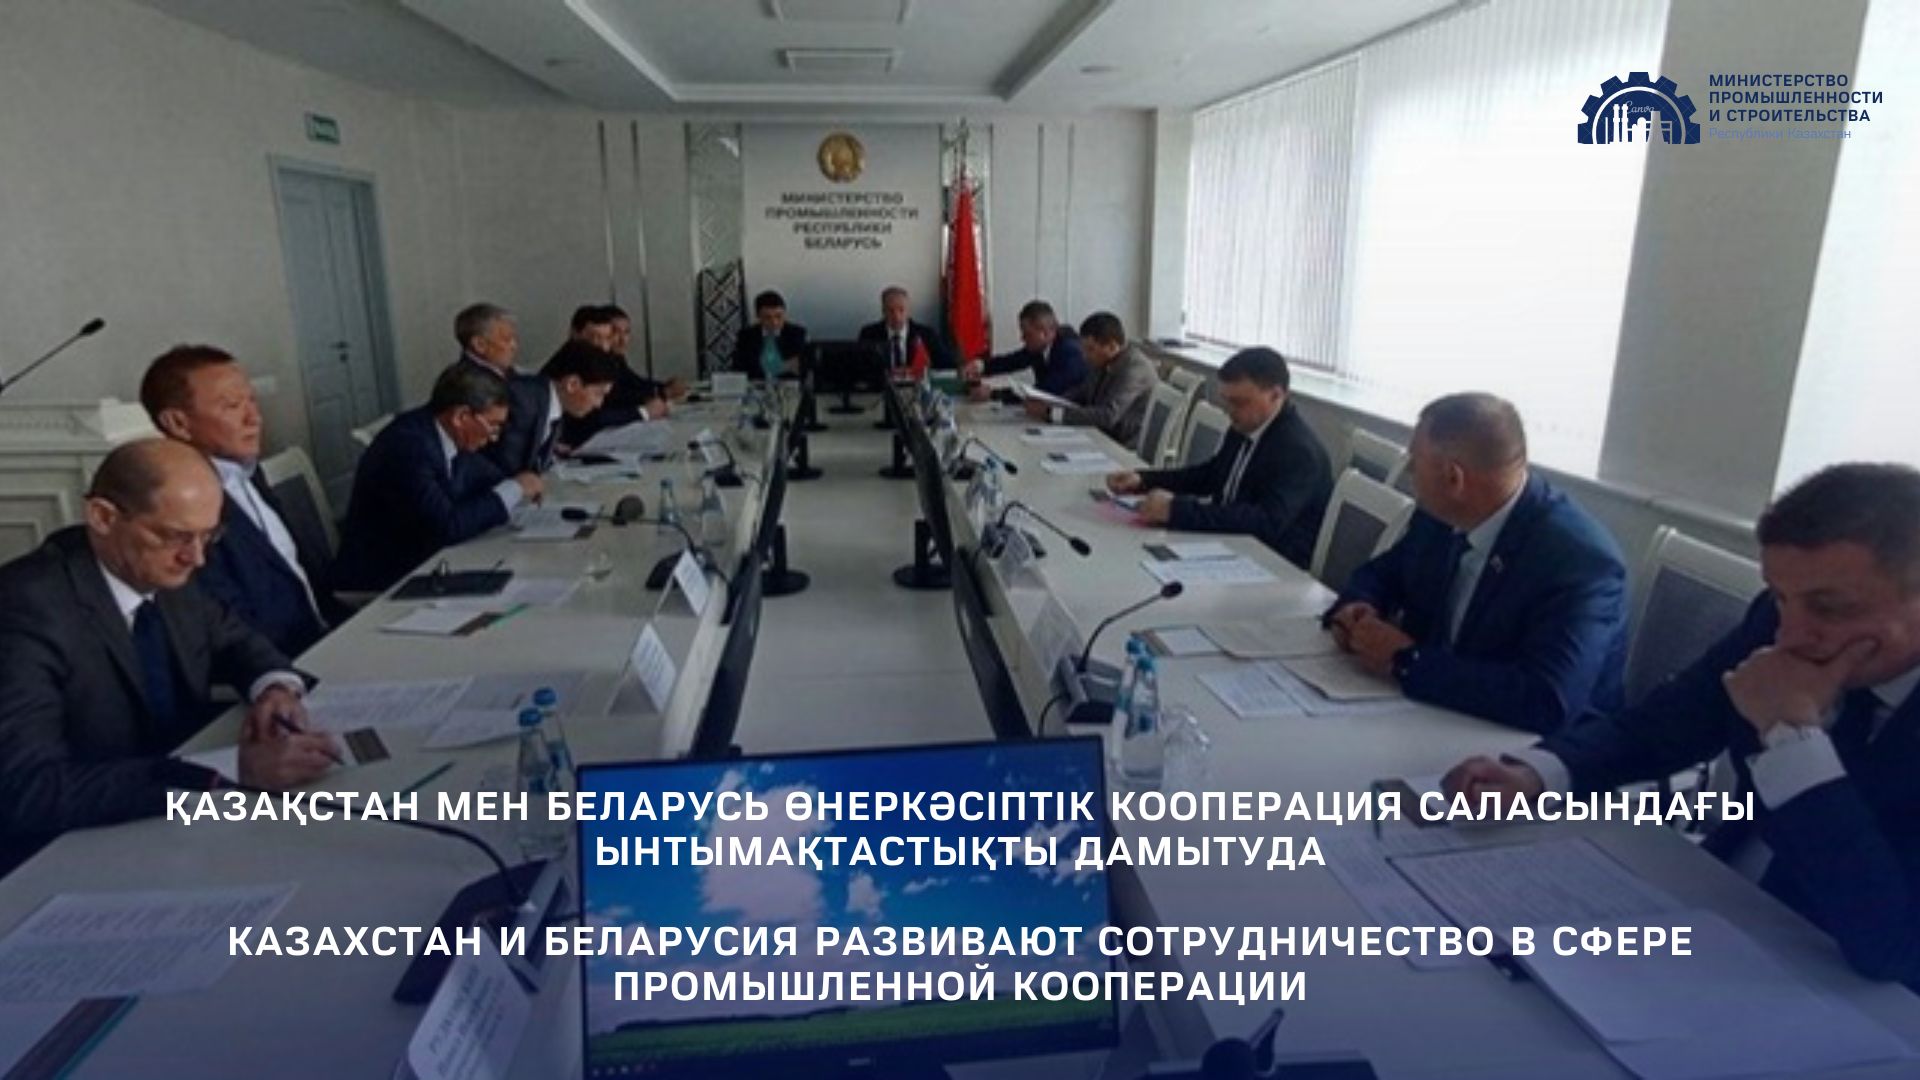 Казахстан и Беларусия развивают сотрудничество в сфере промышленной кооперации